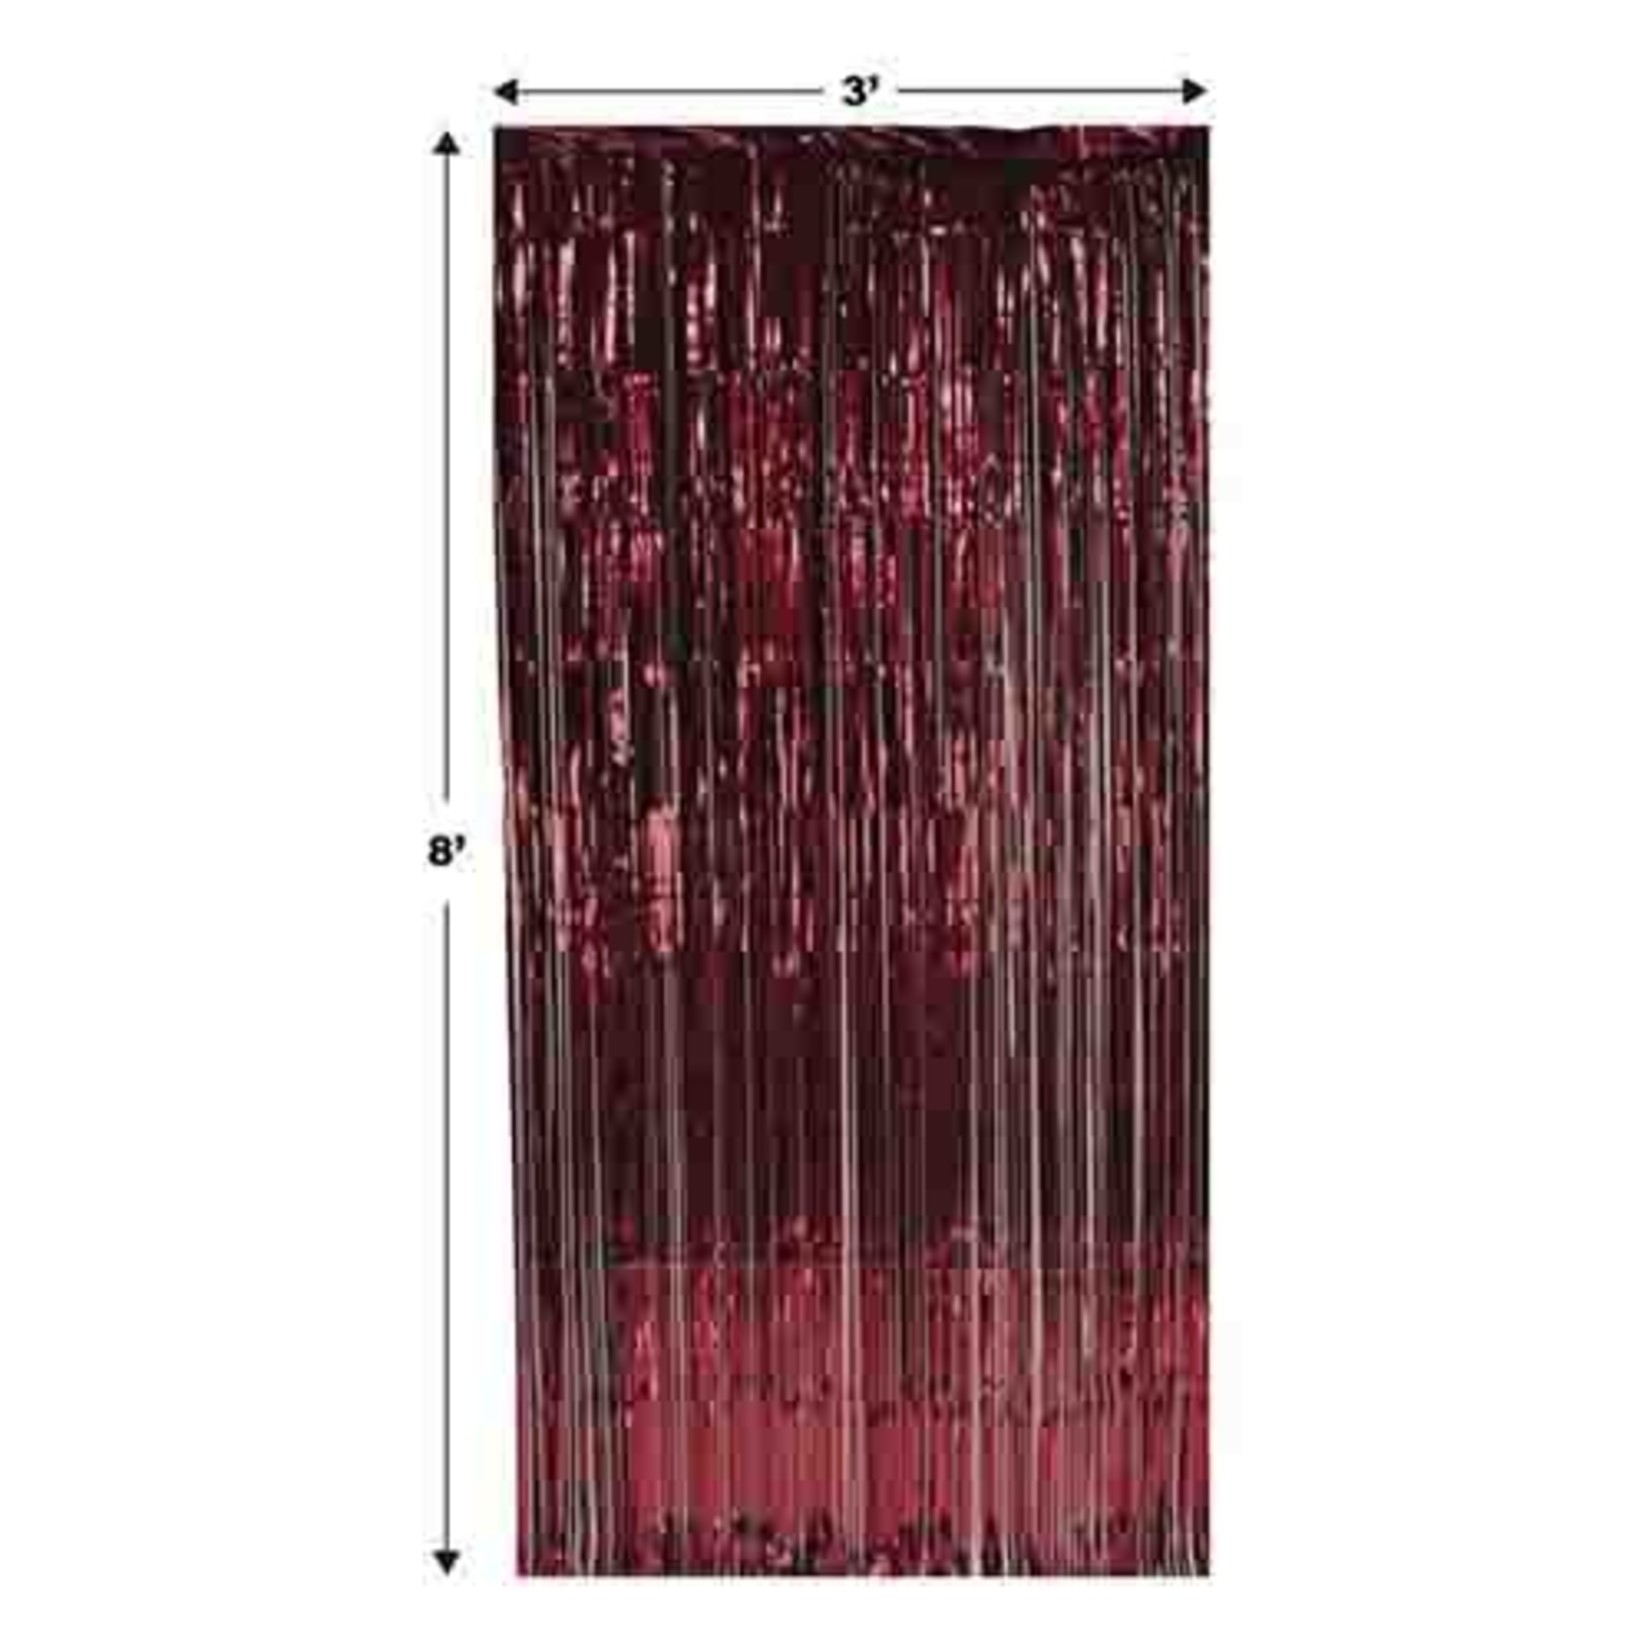 Beistle Burgundy Metallic Door Curtain/ Backdrop - 36" x 8'